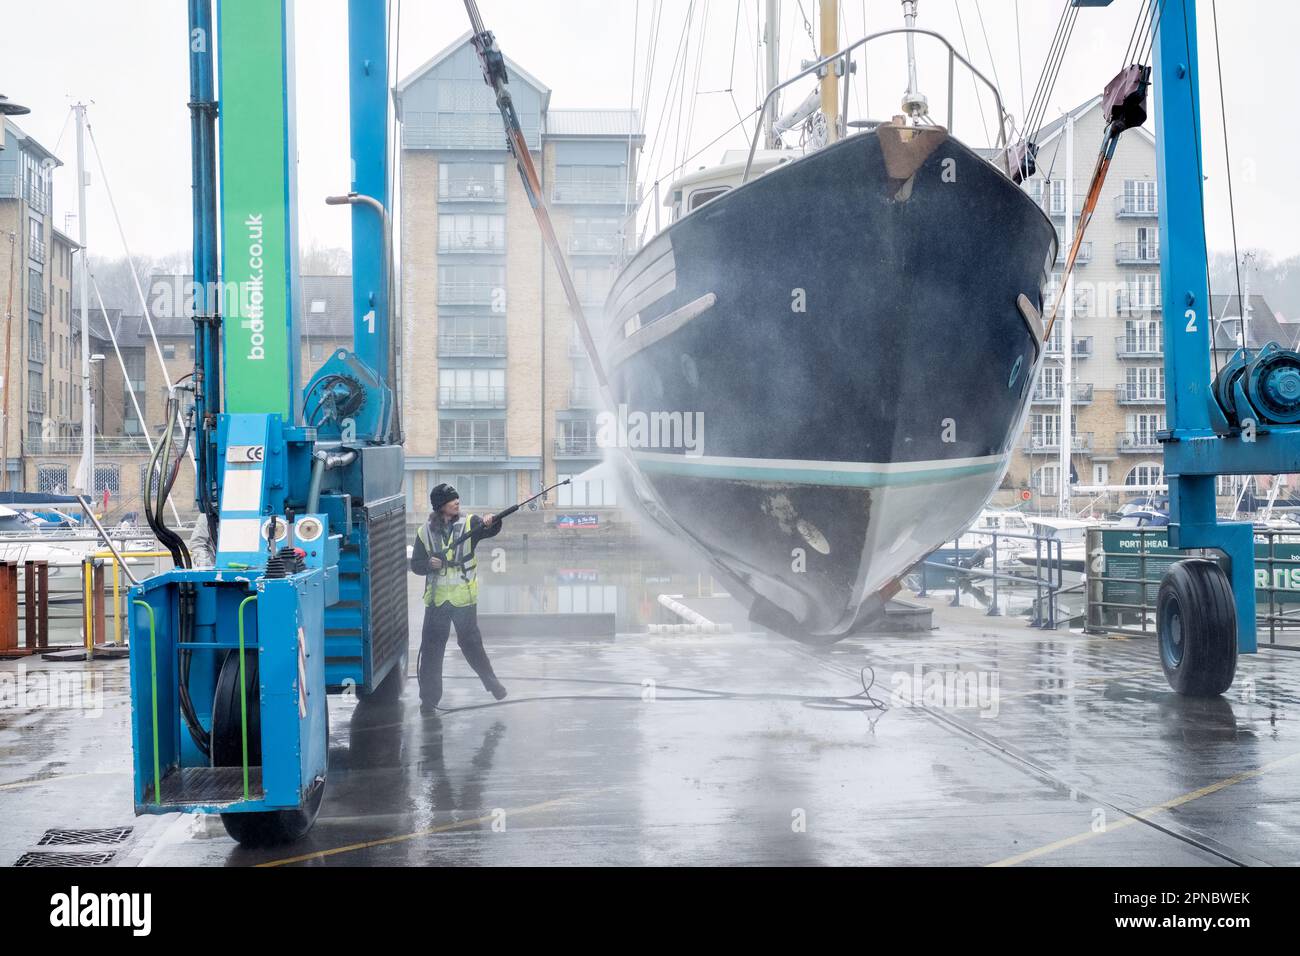 Une opératrice d'entretien de chantier naval nettoie la coque d'un bateau soulevé de l'eau à Portishead Marina UK. Le bateau est tenu dans un bateau sage Hoist Banque D'Images